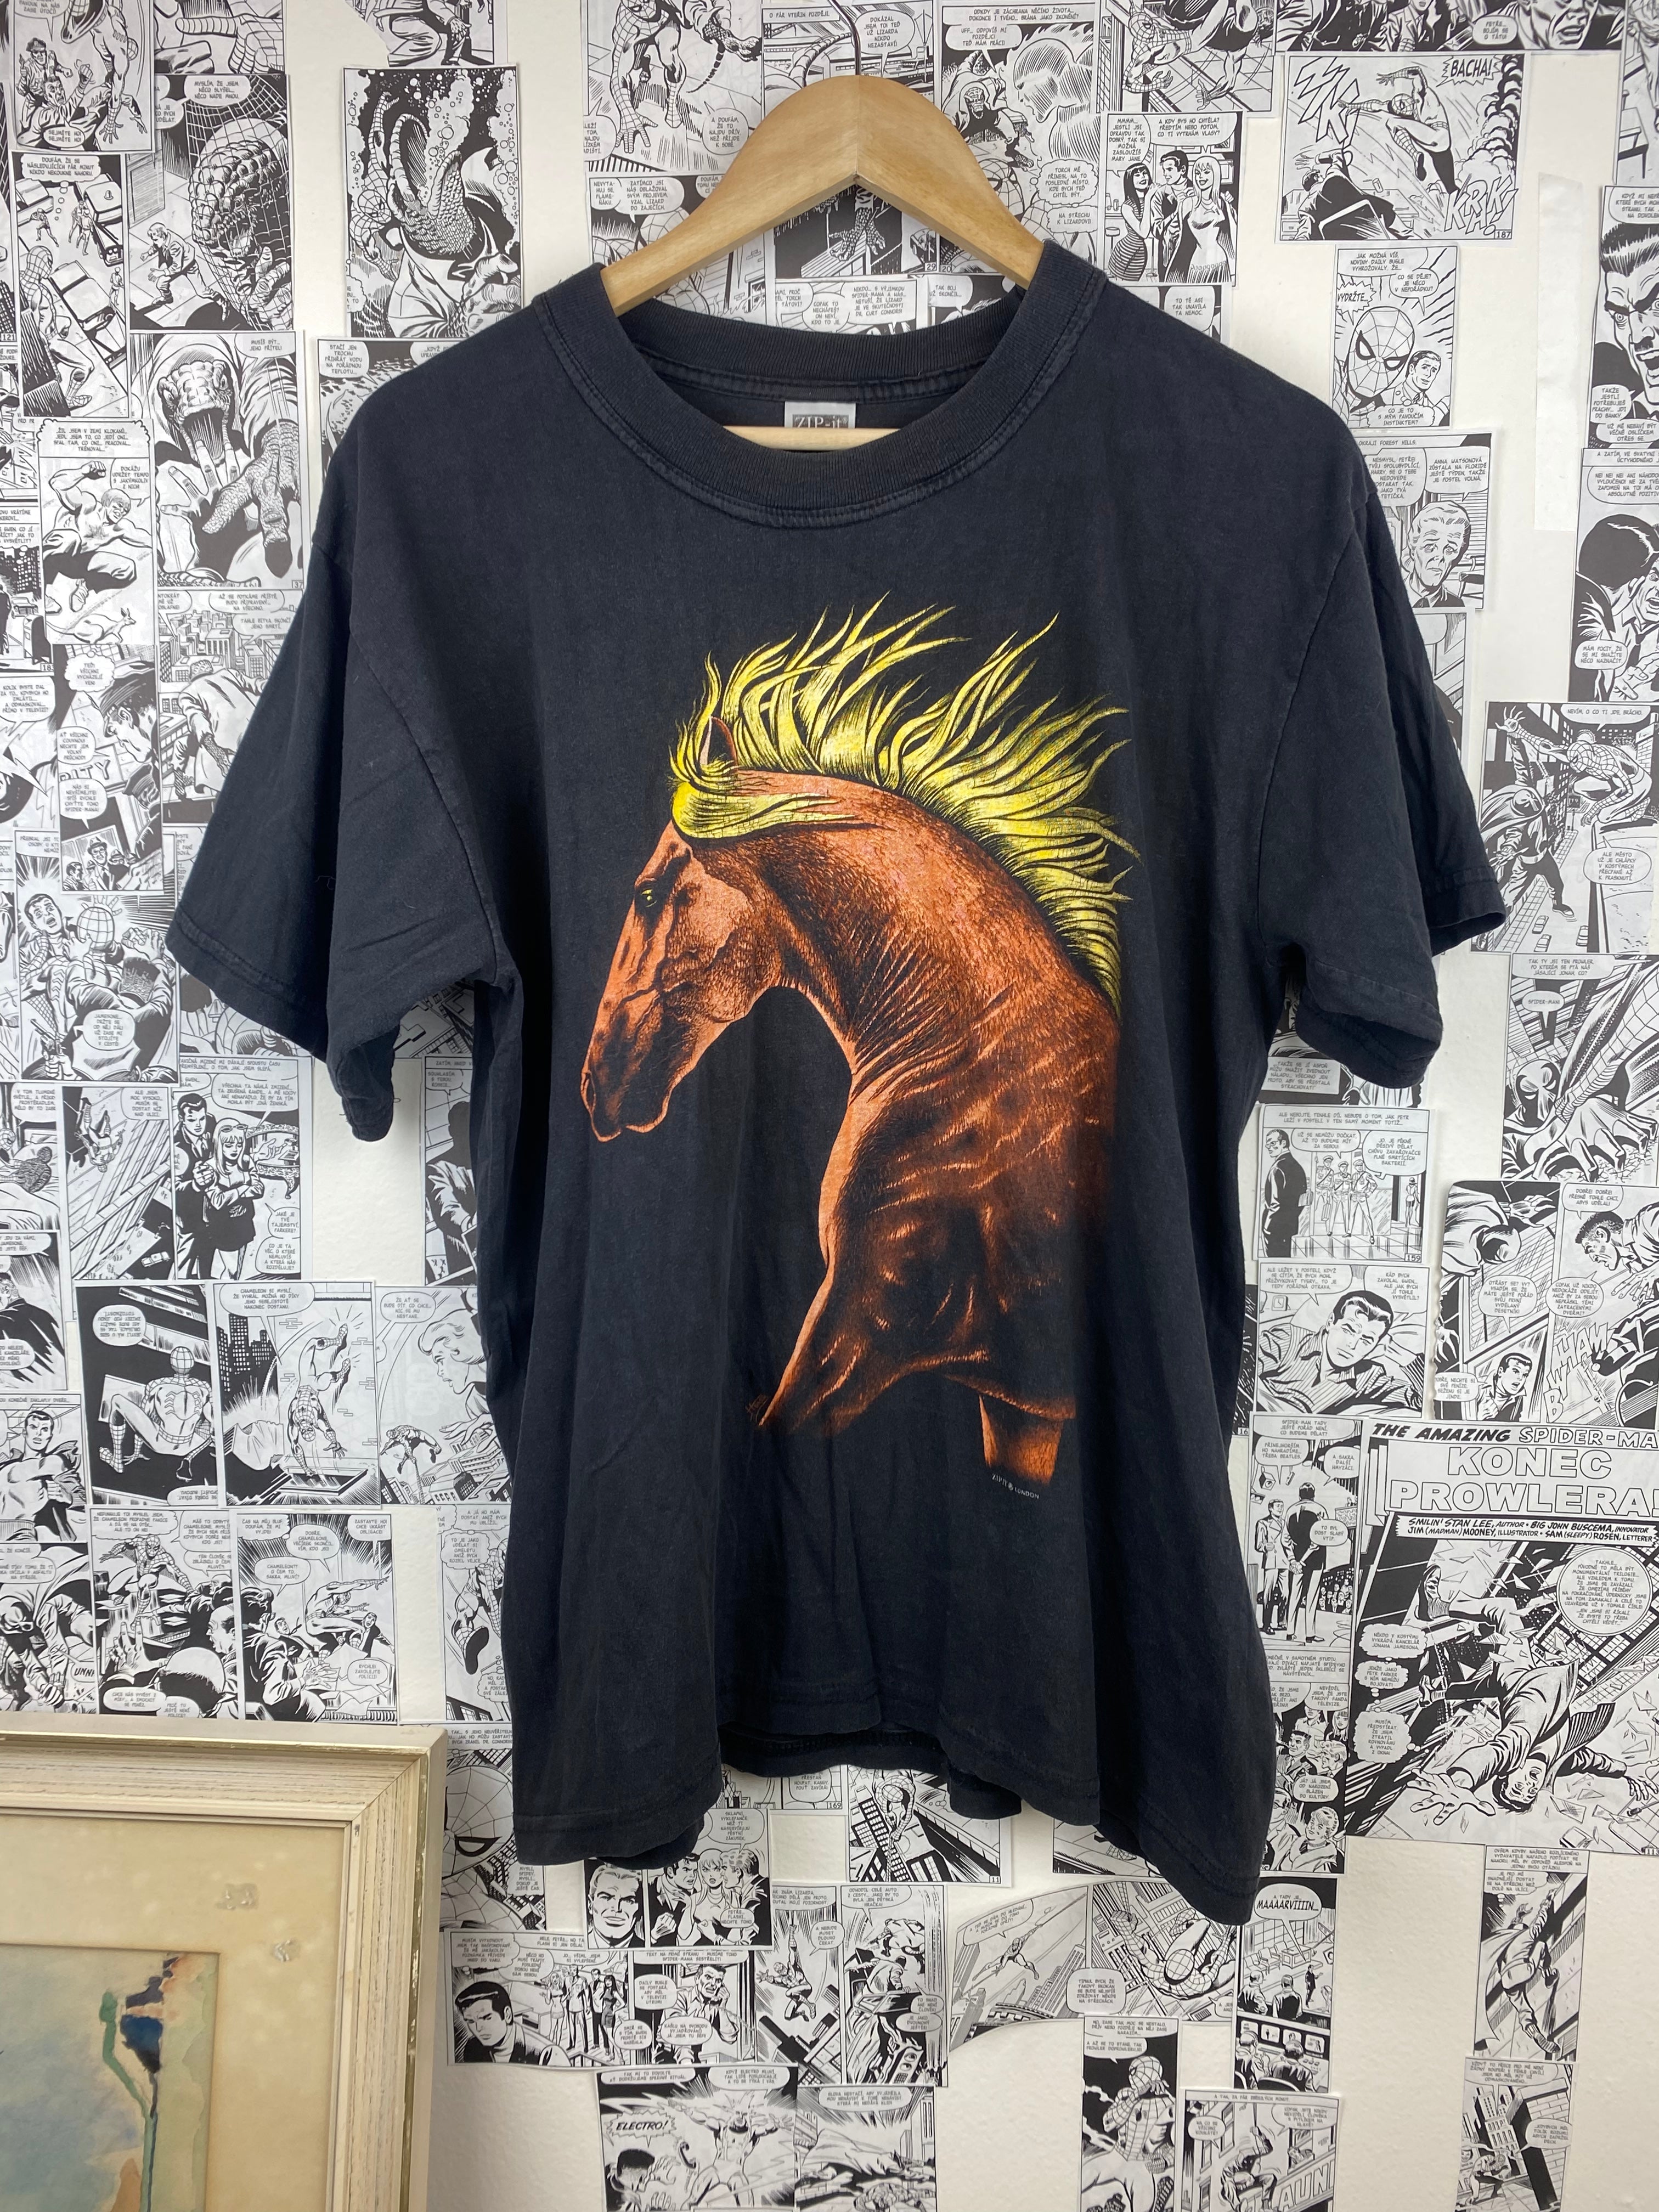 Vintage Horse 90s t-shirt - size L